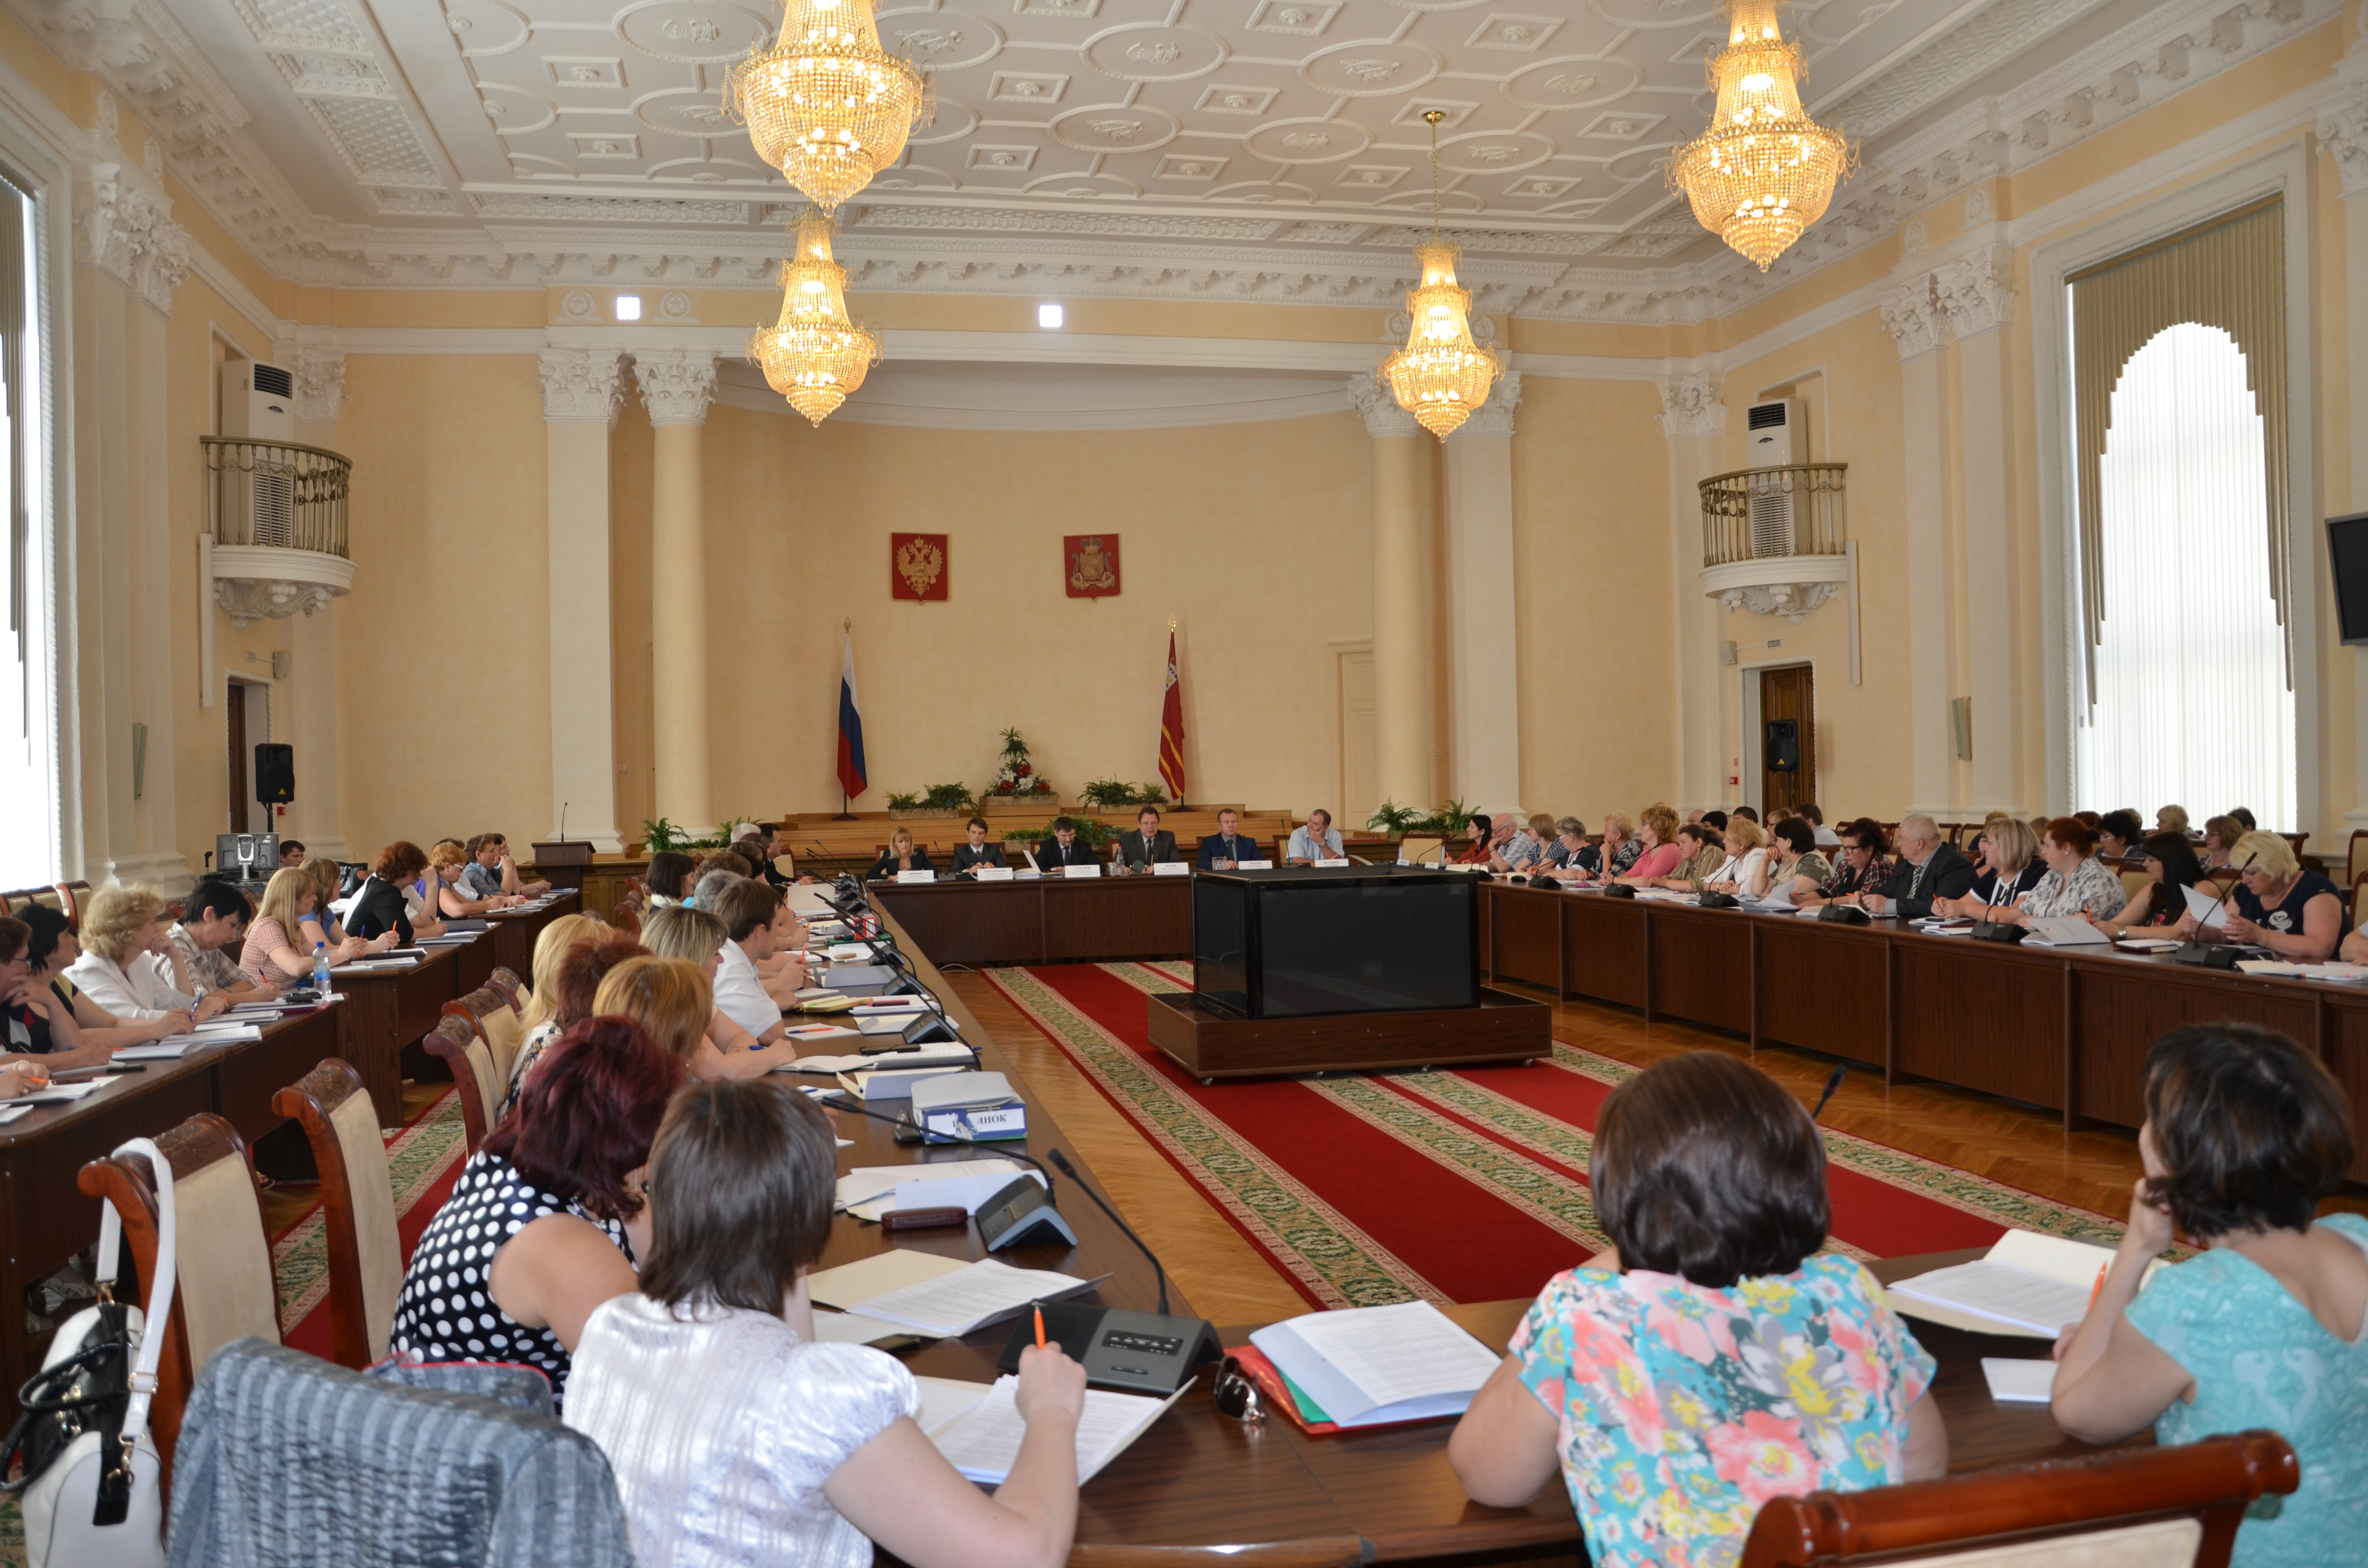 27 мая 2015 года проведено совещание по вопросам подготовки и проведения выборов в единый день голосования 13 сентября 2015 года 
на территории Смоленской области